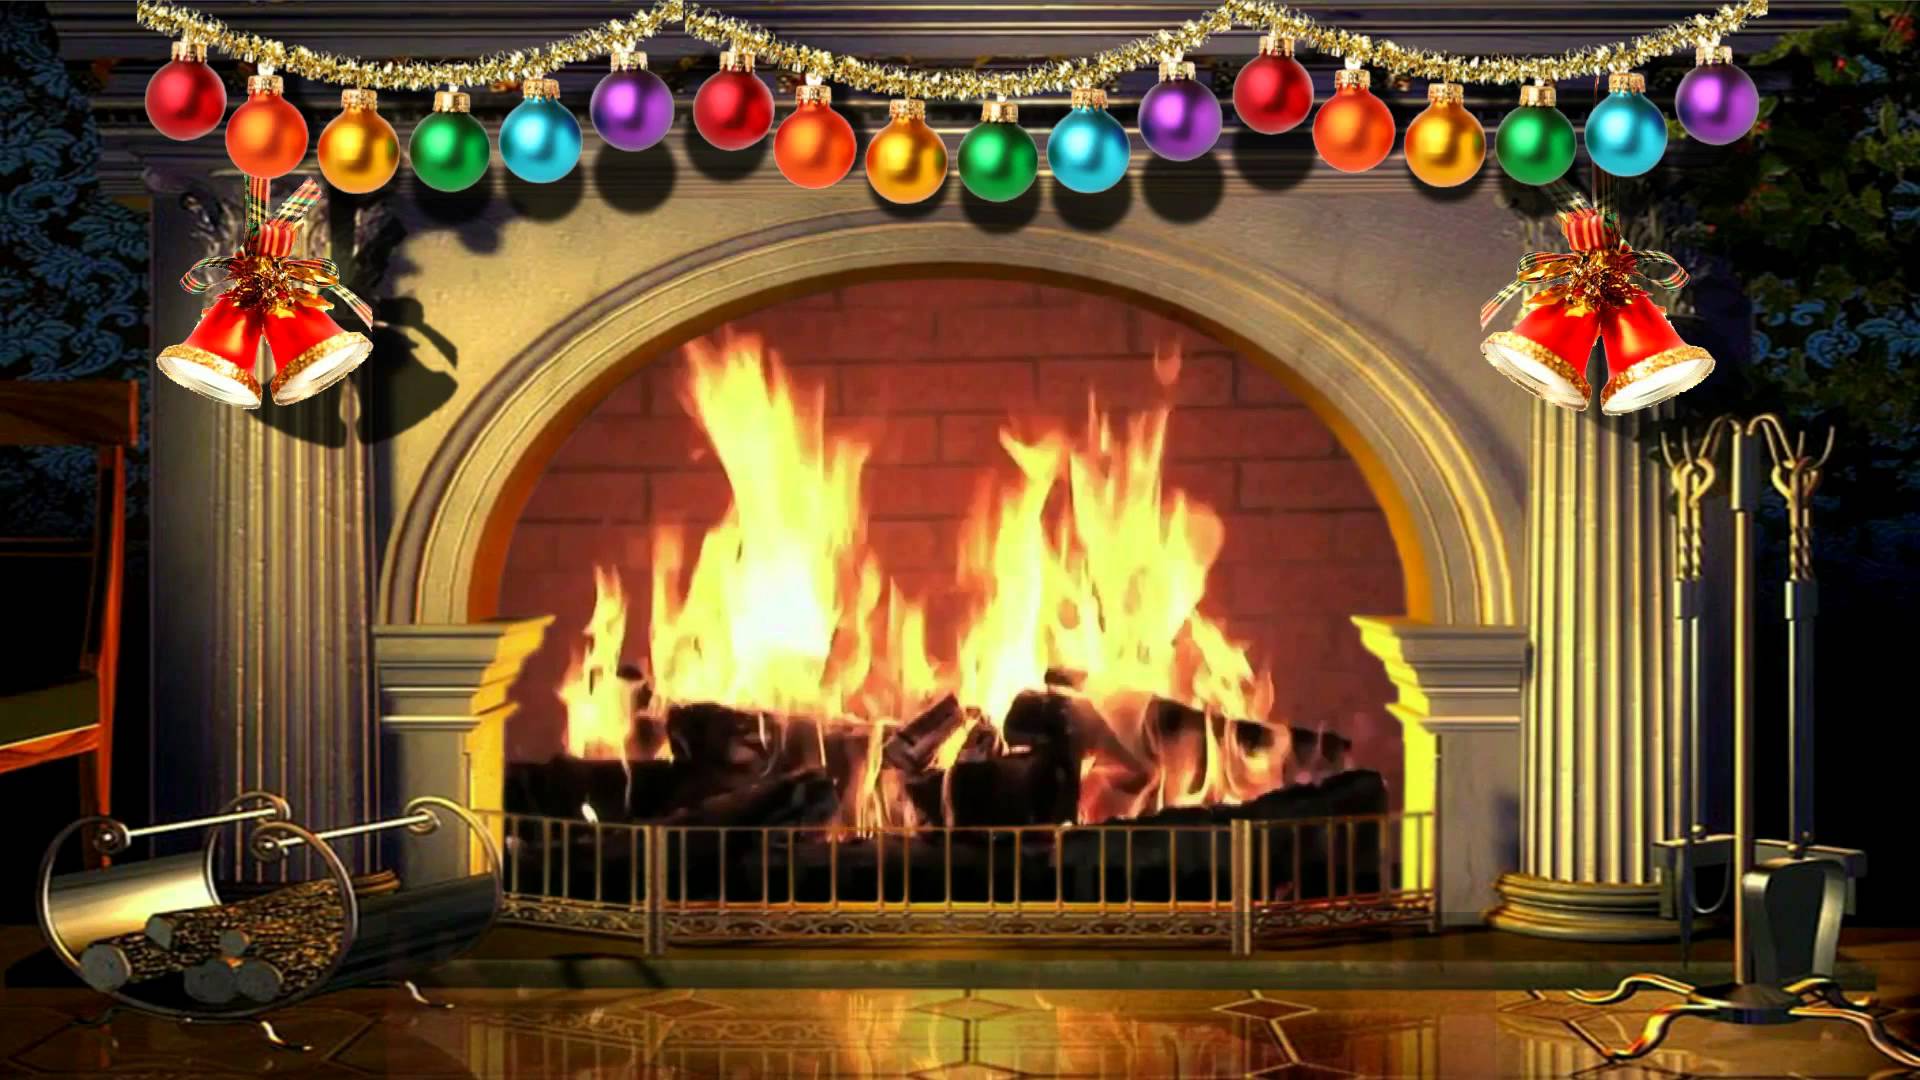 Đêm Giáng sinh sắp đến rồi! Bạn muốn tạo không khí ấm áp cho gia đình mình trong ngày lễ này? Hãy thưởng thức video lò sưởi Giáng sinh để cảm nhận được sự ngọt ngào, ấm cúng của mùa đông đang đến gần.